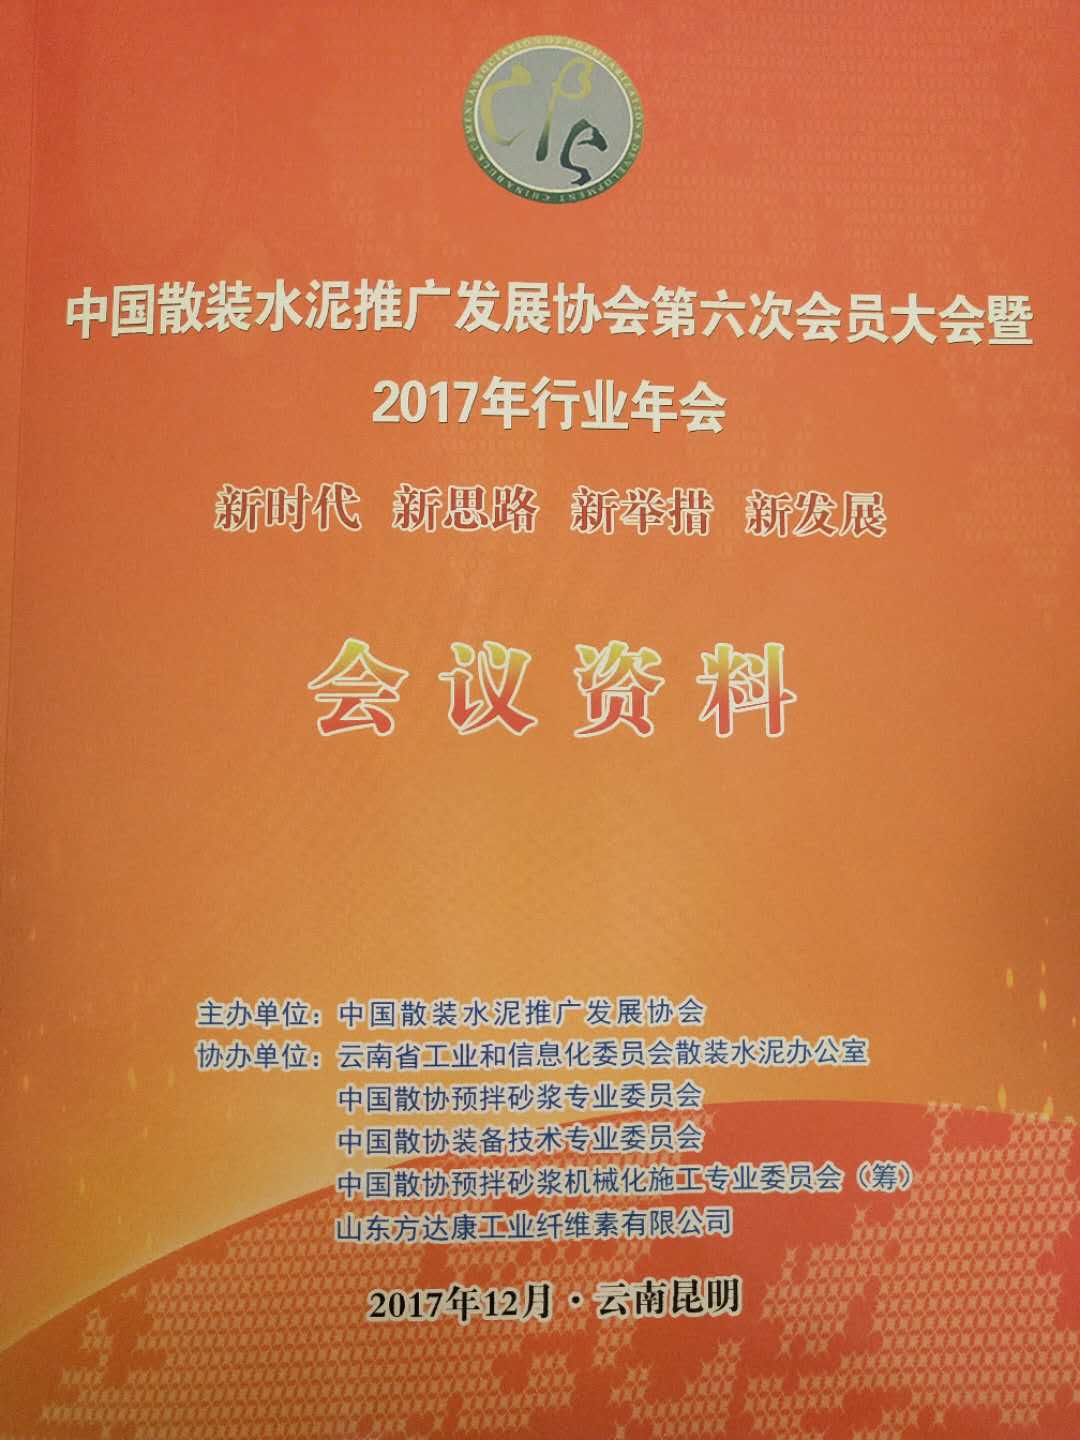 中国散装水泥发展协会第六次会员大会在云南昆明成功召开